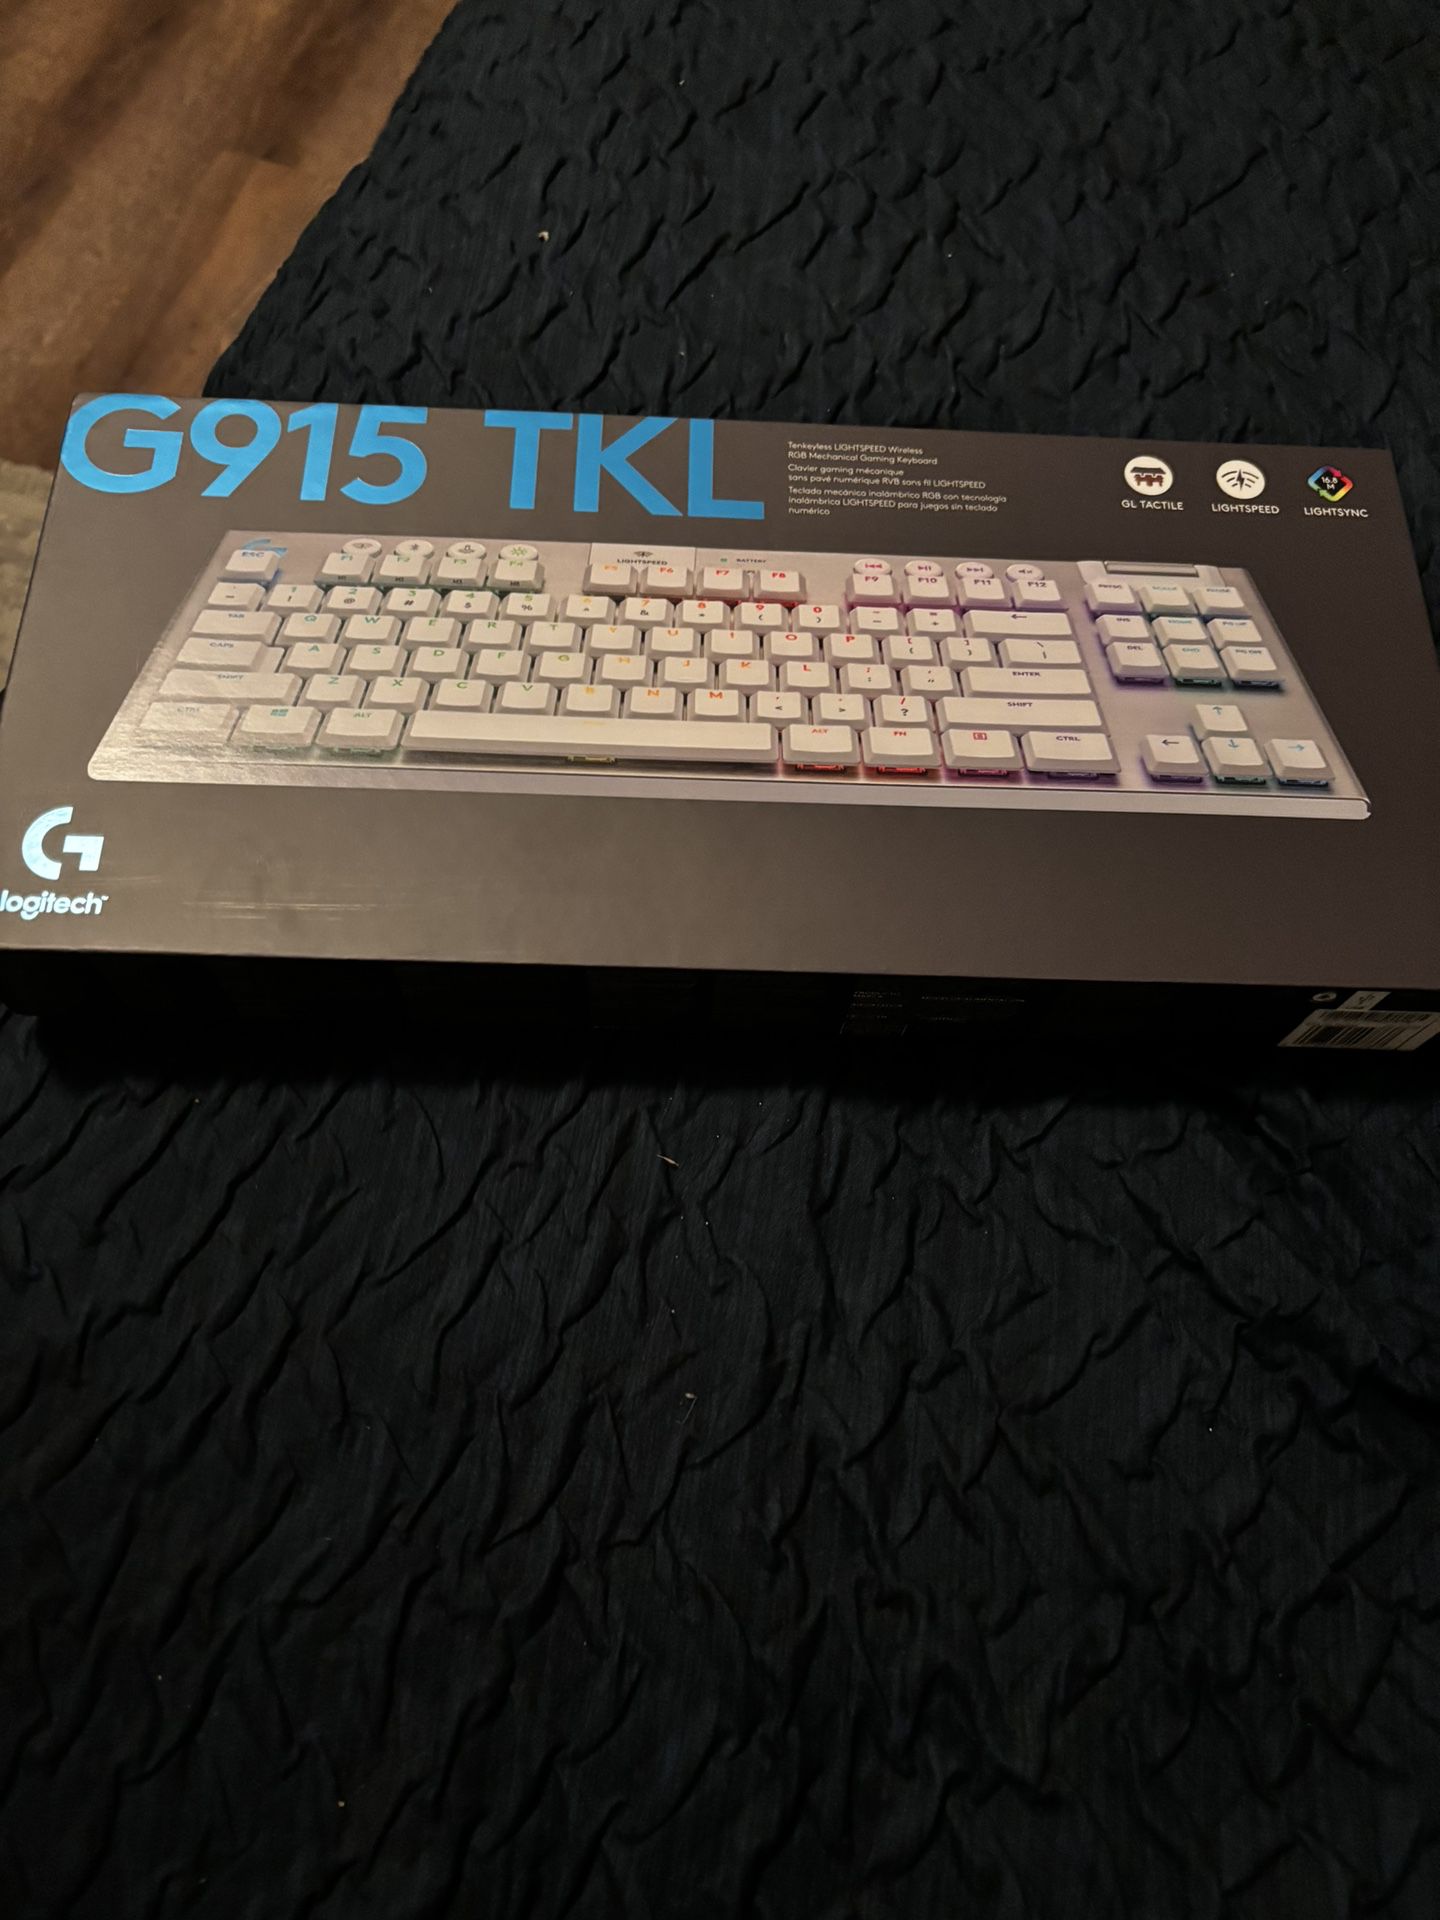 G915 TKL keyboard